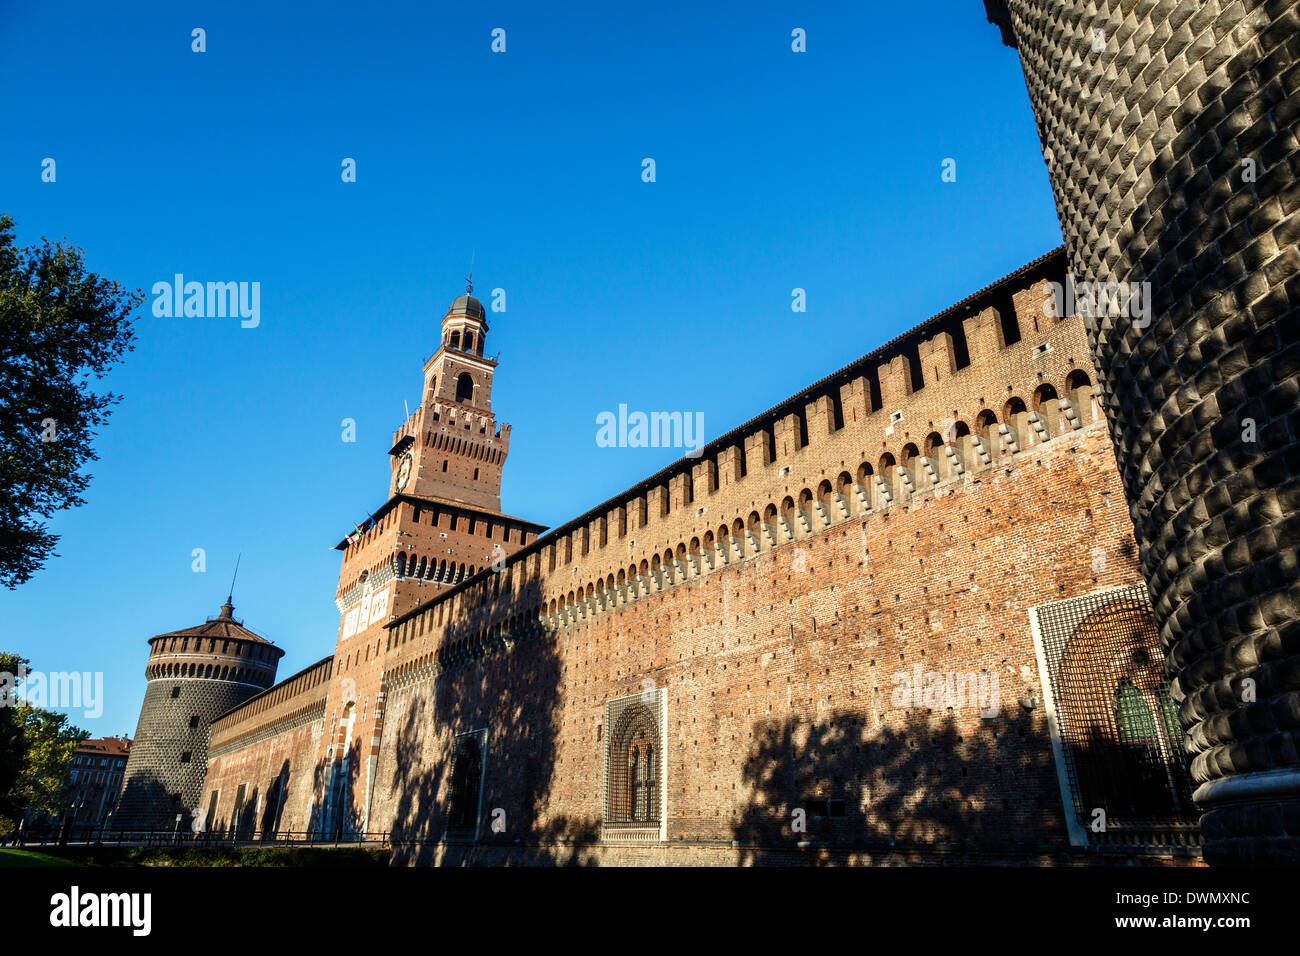 Castello Sforzesco (Sforza Castle), Milan, Lombardy, Italy,  Europe Stock Photo